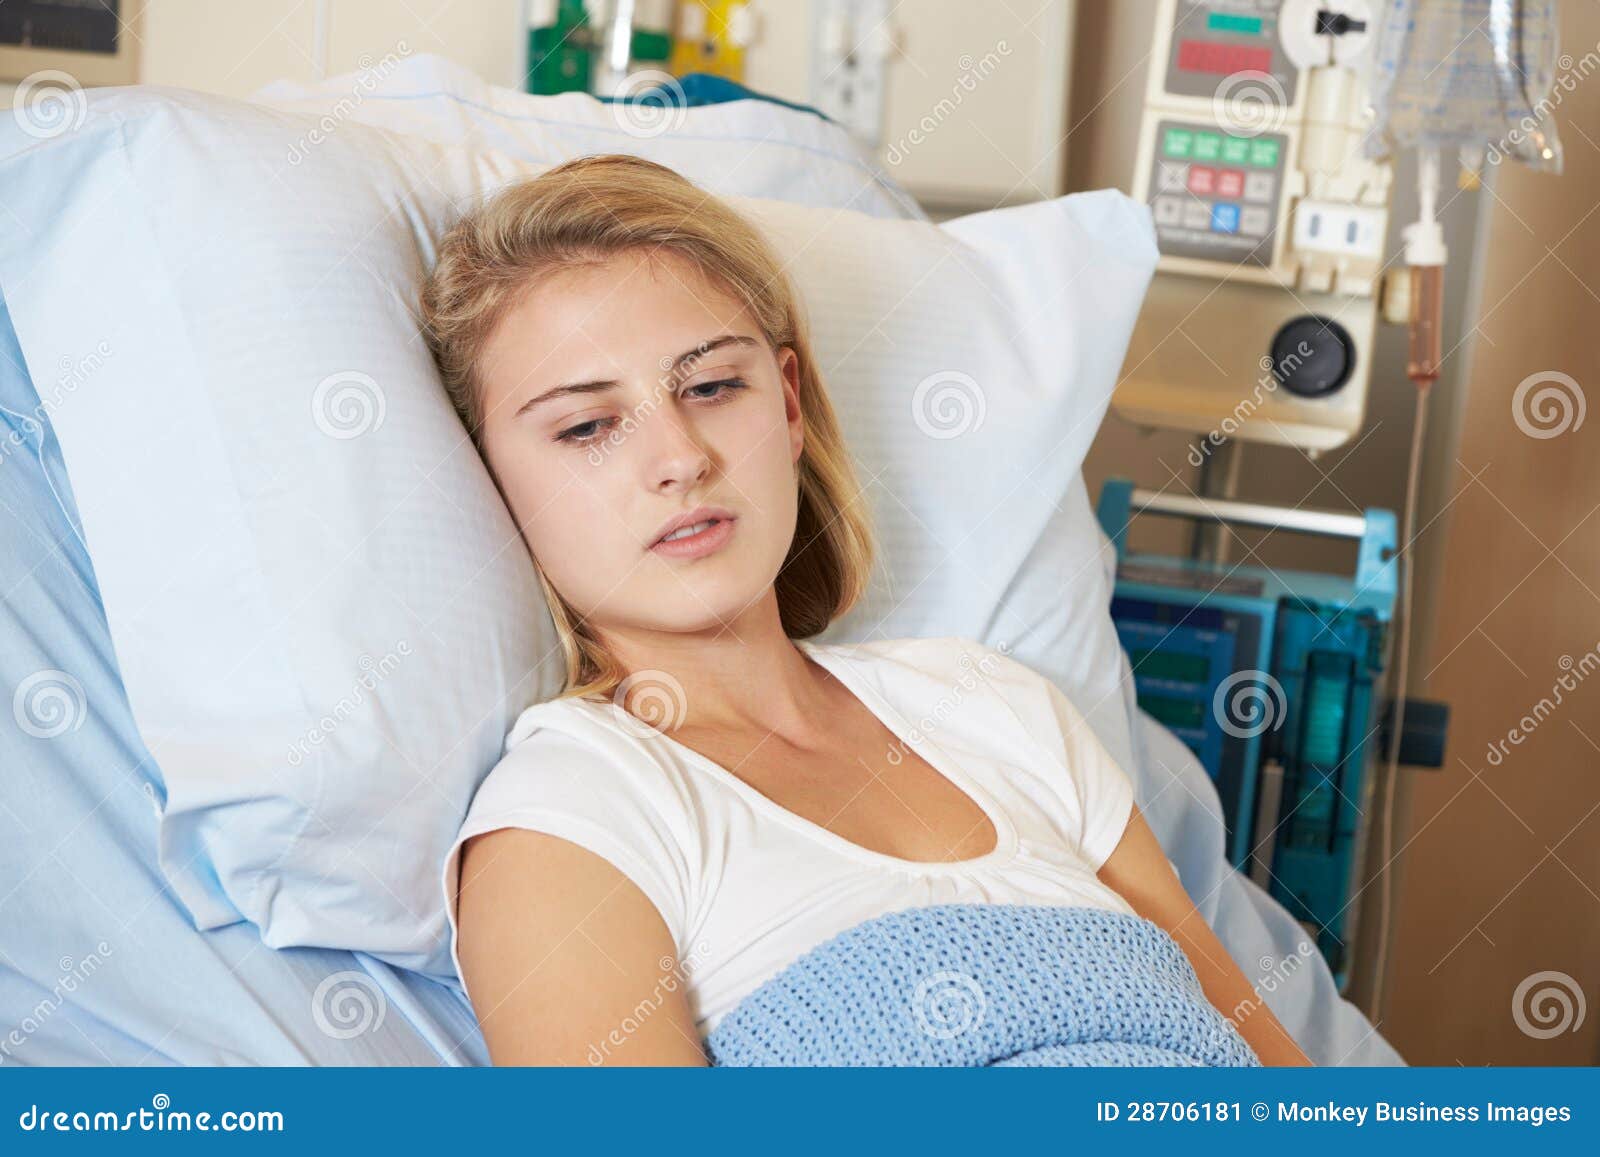 Sleeping Teen Patient 17